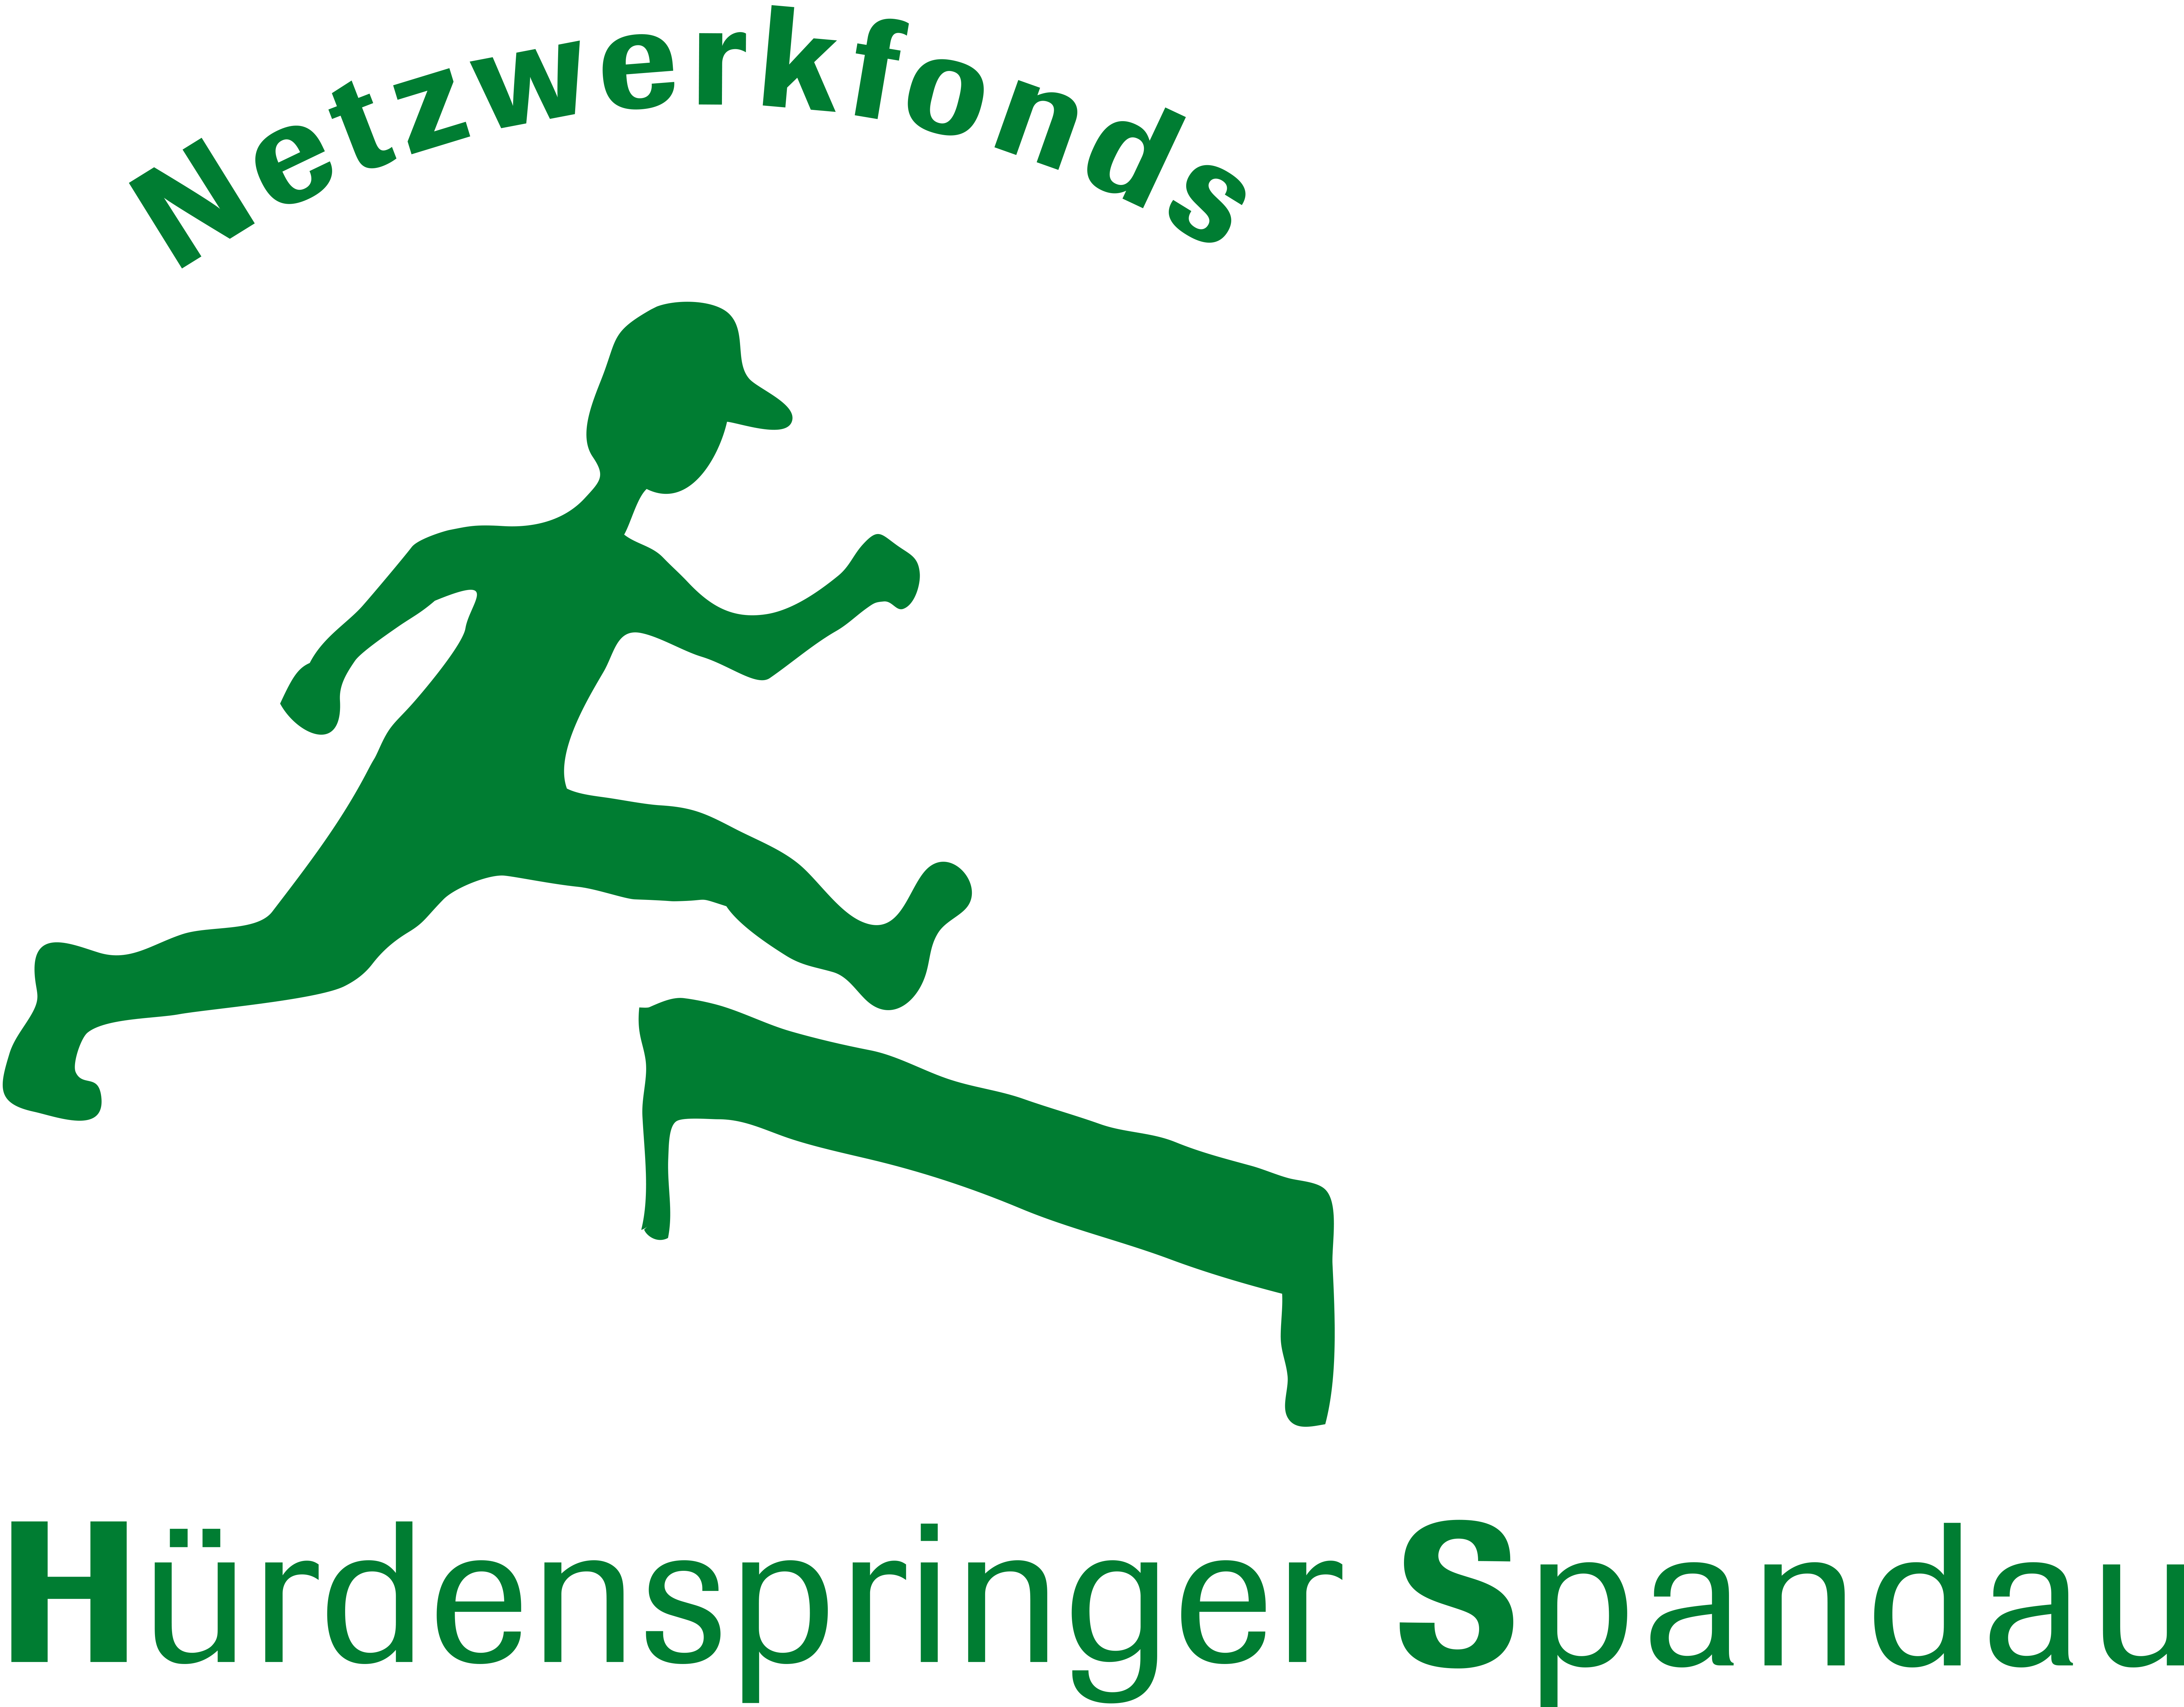 Logo: Hürdenspringer Spandau Netzwerkfonds